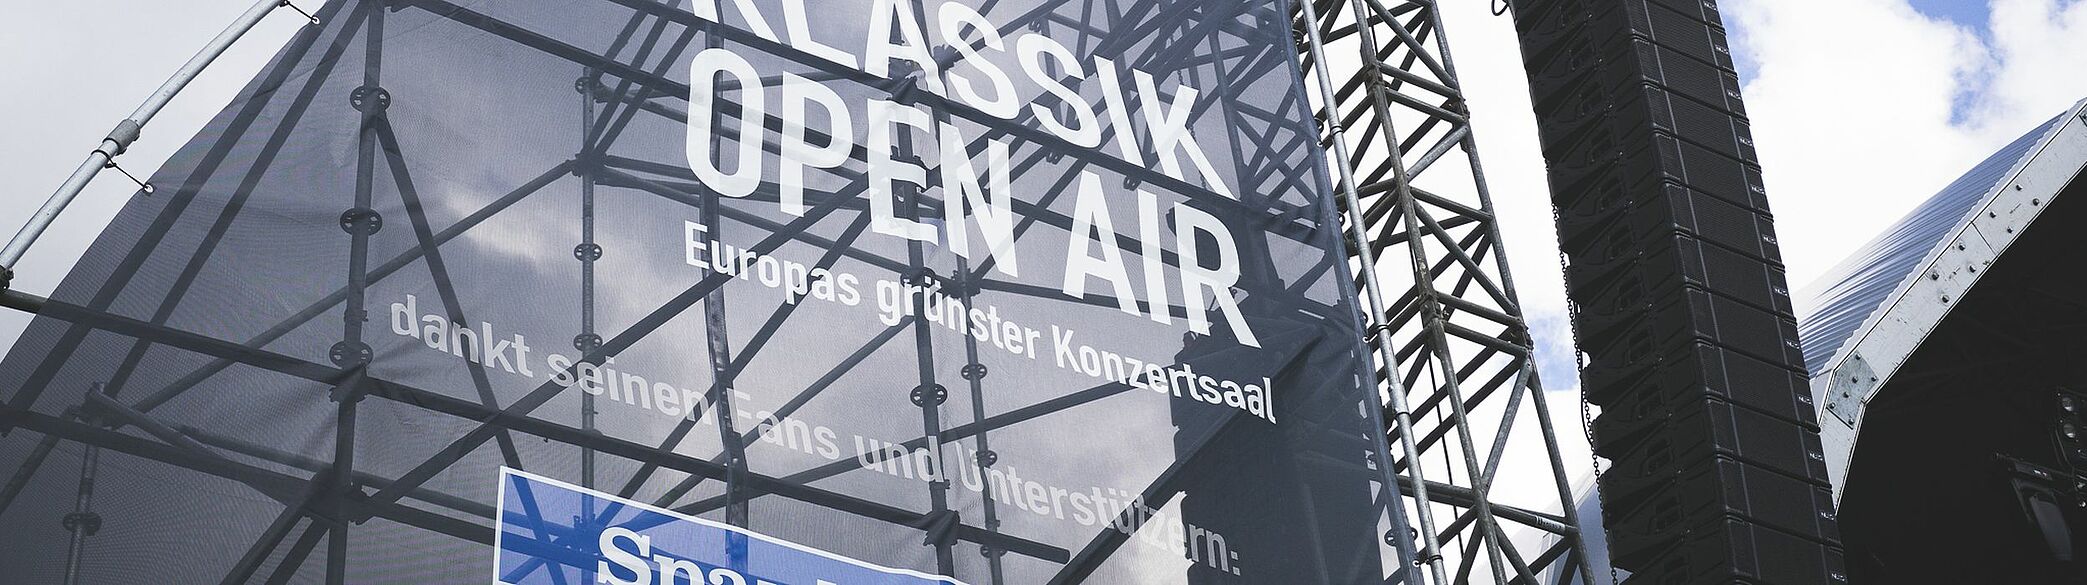 Klassik Open Air Banner